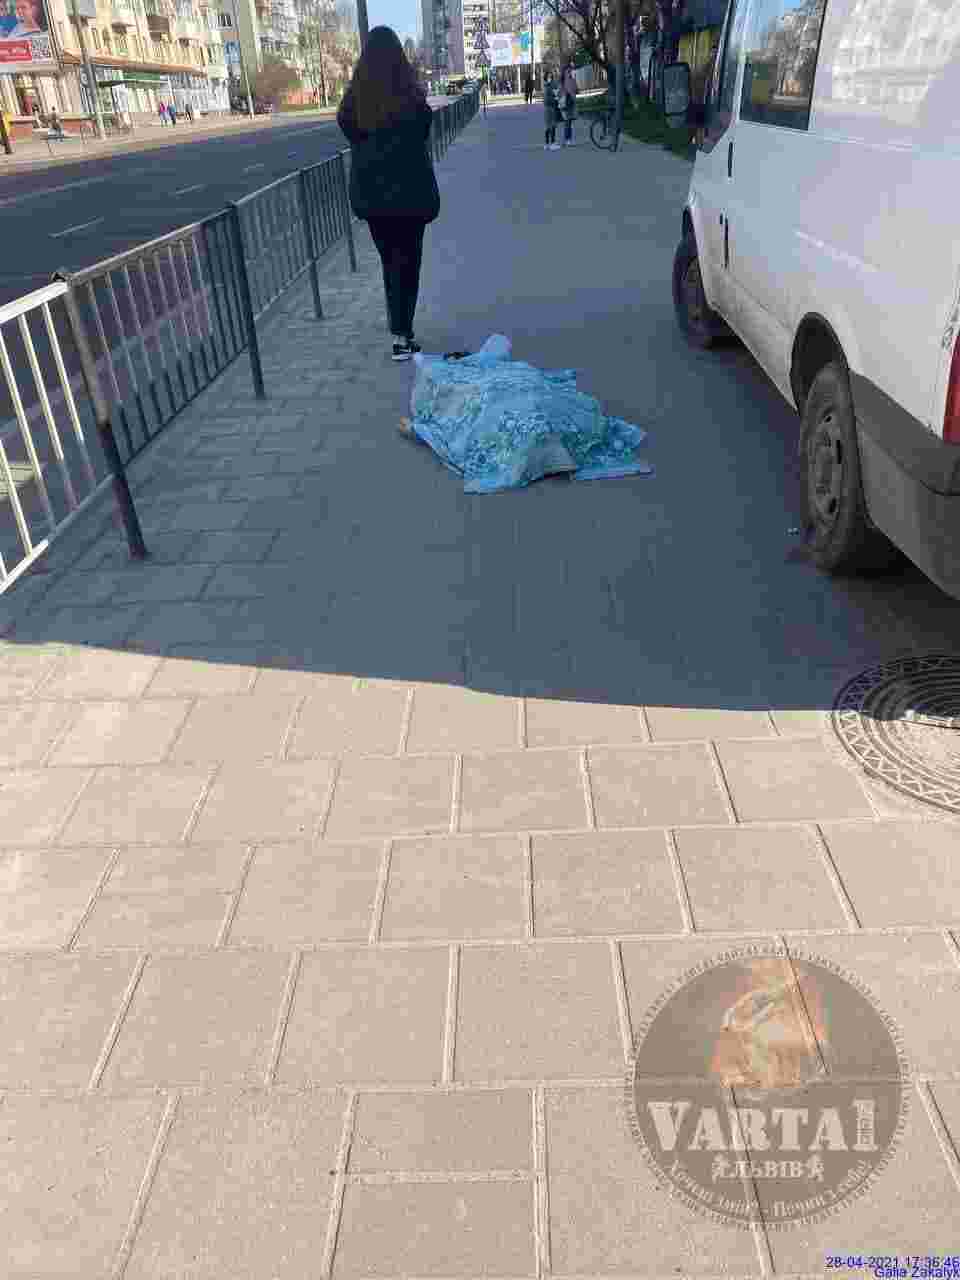 У Львові на вулиці помер чоловік (фото 18+)